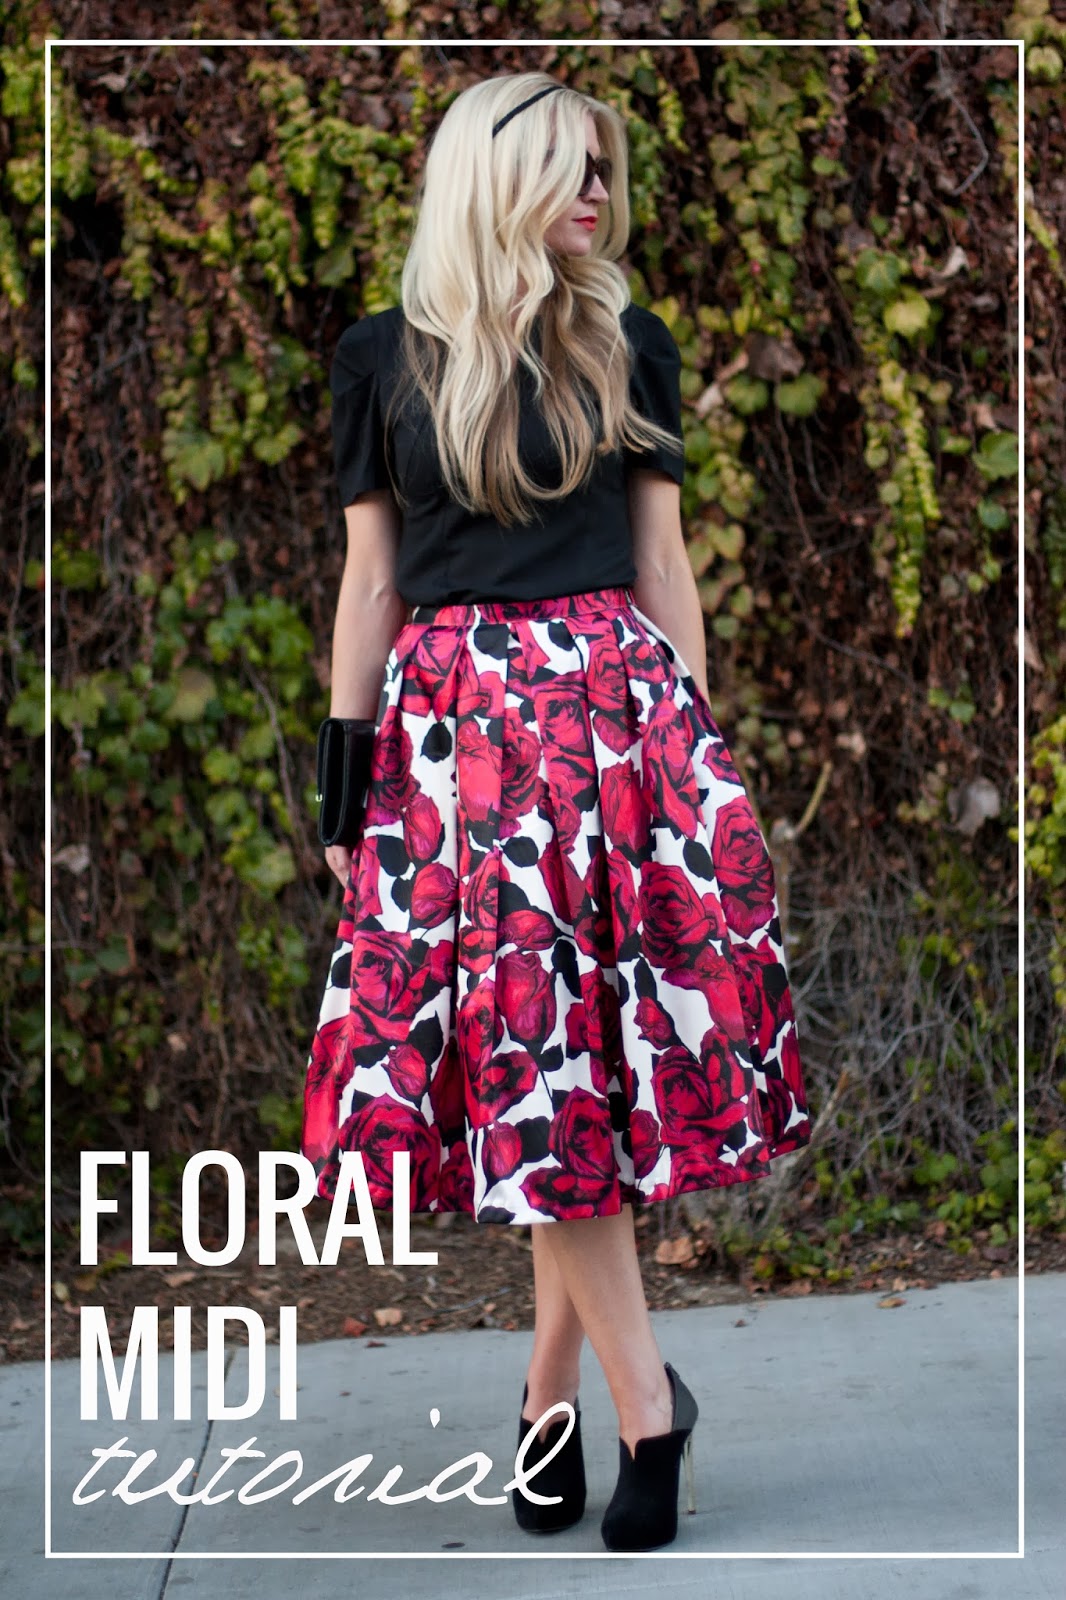 Floral Midi Skirt Tutorial